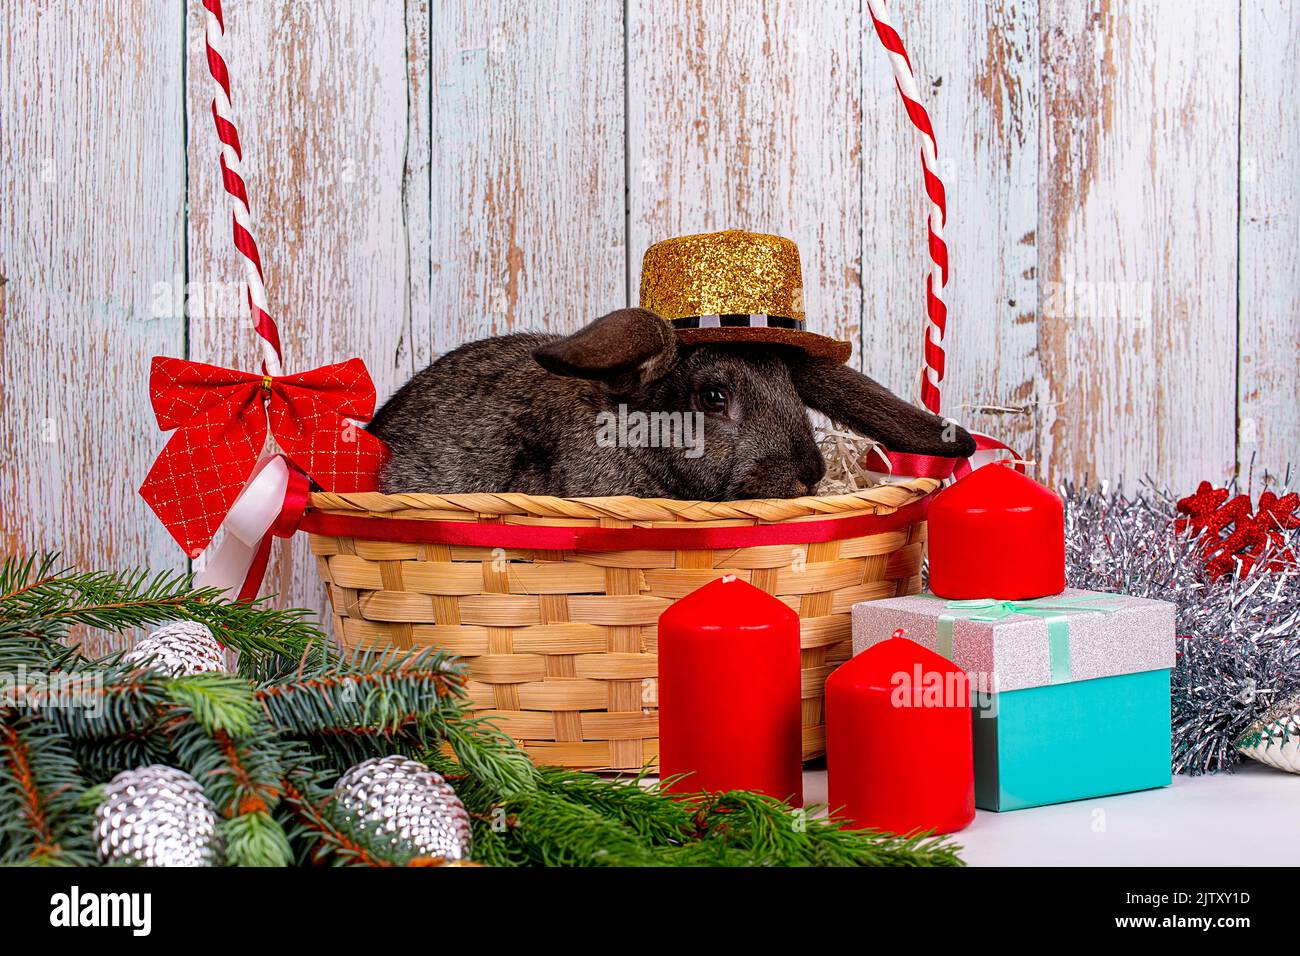 Un lapin noir du nouvel an dans un chapeau doré est placé dans un panier parmi les branches d'un sapin, les cadeaux et décorations du nouvel an, un symbole de l'année 20 Banque D'Images